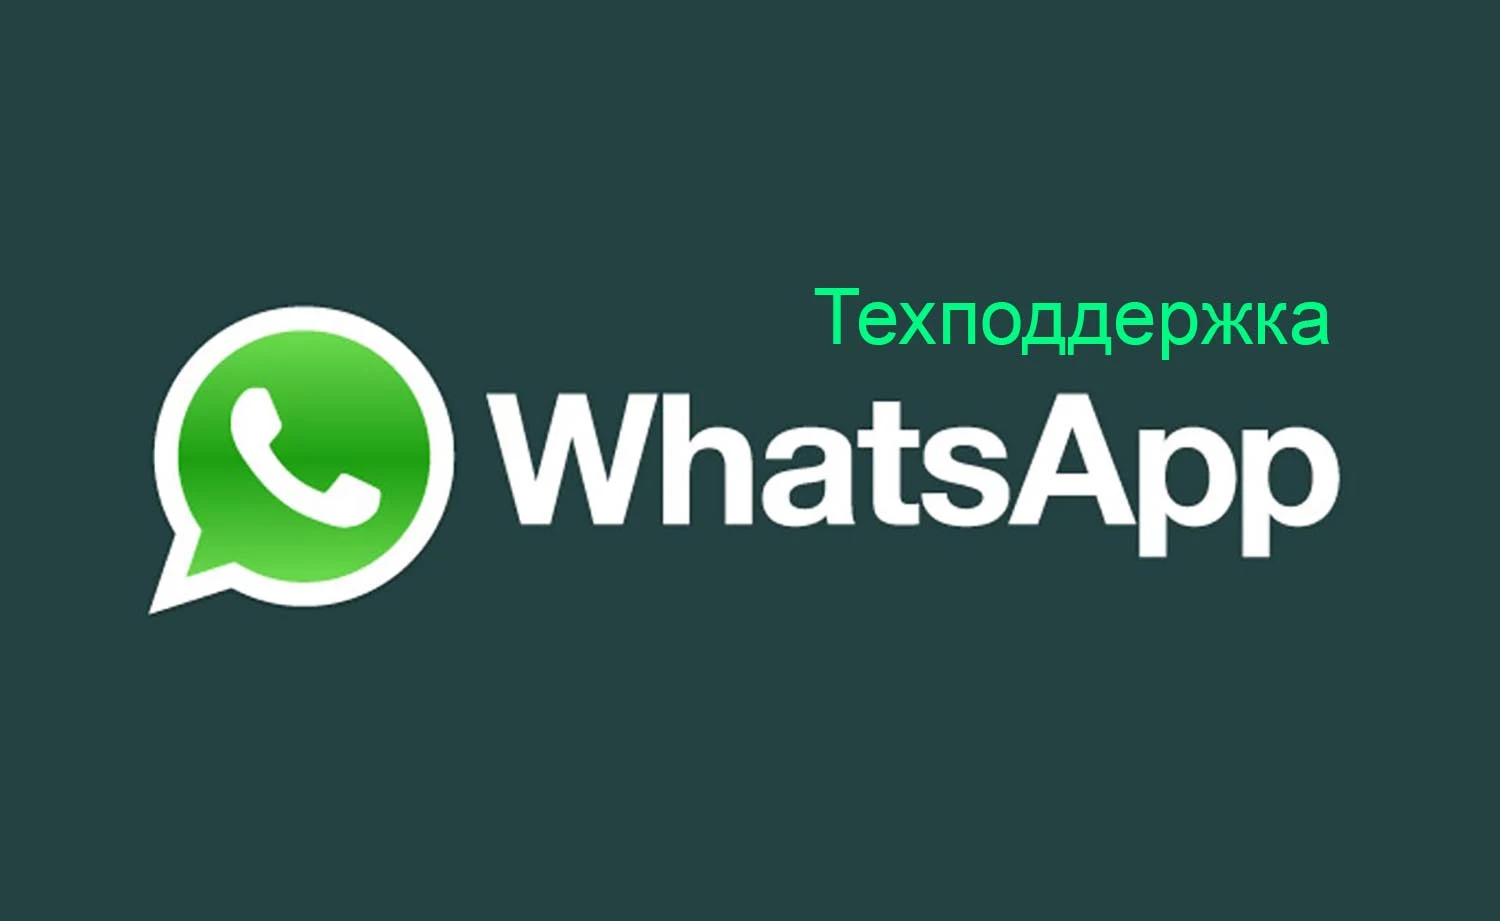 Техподдержка WhatsApp